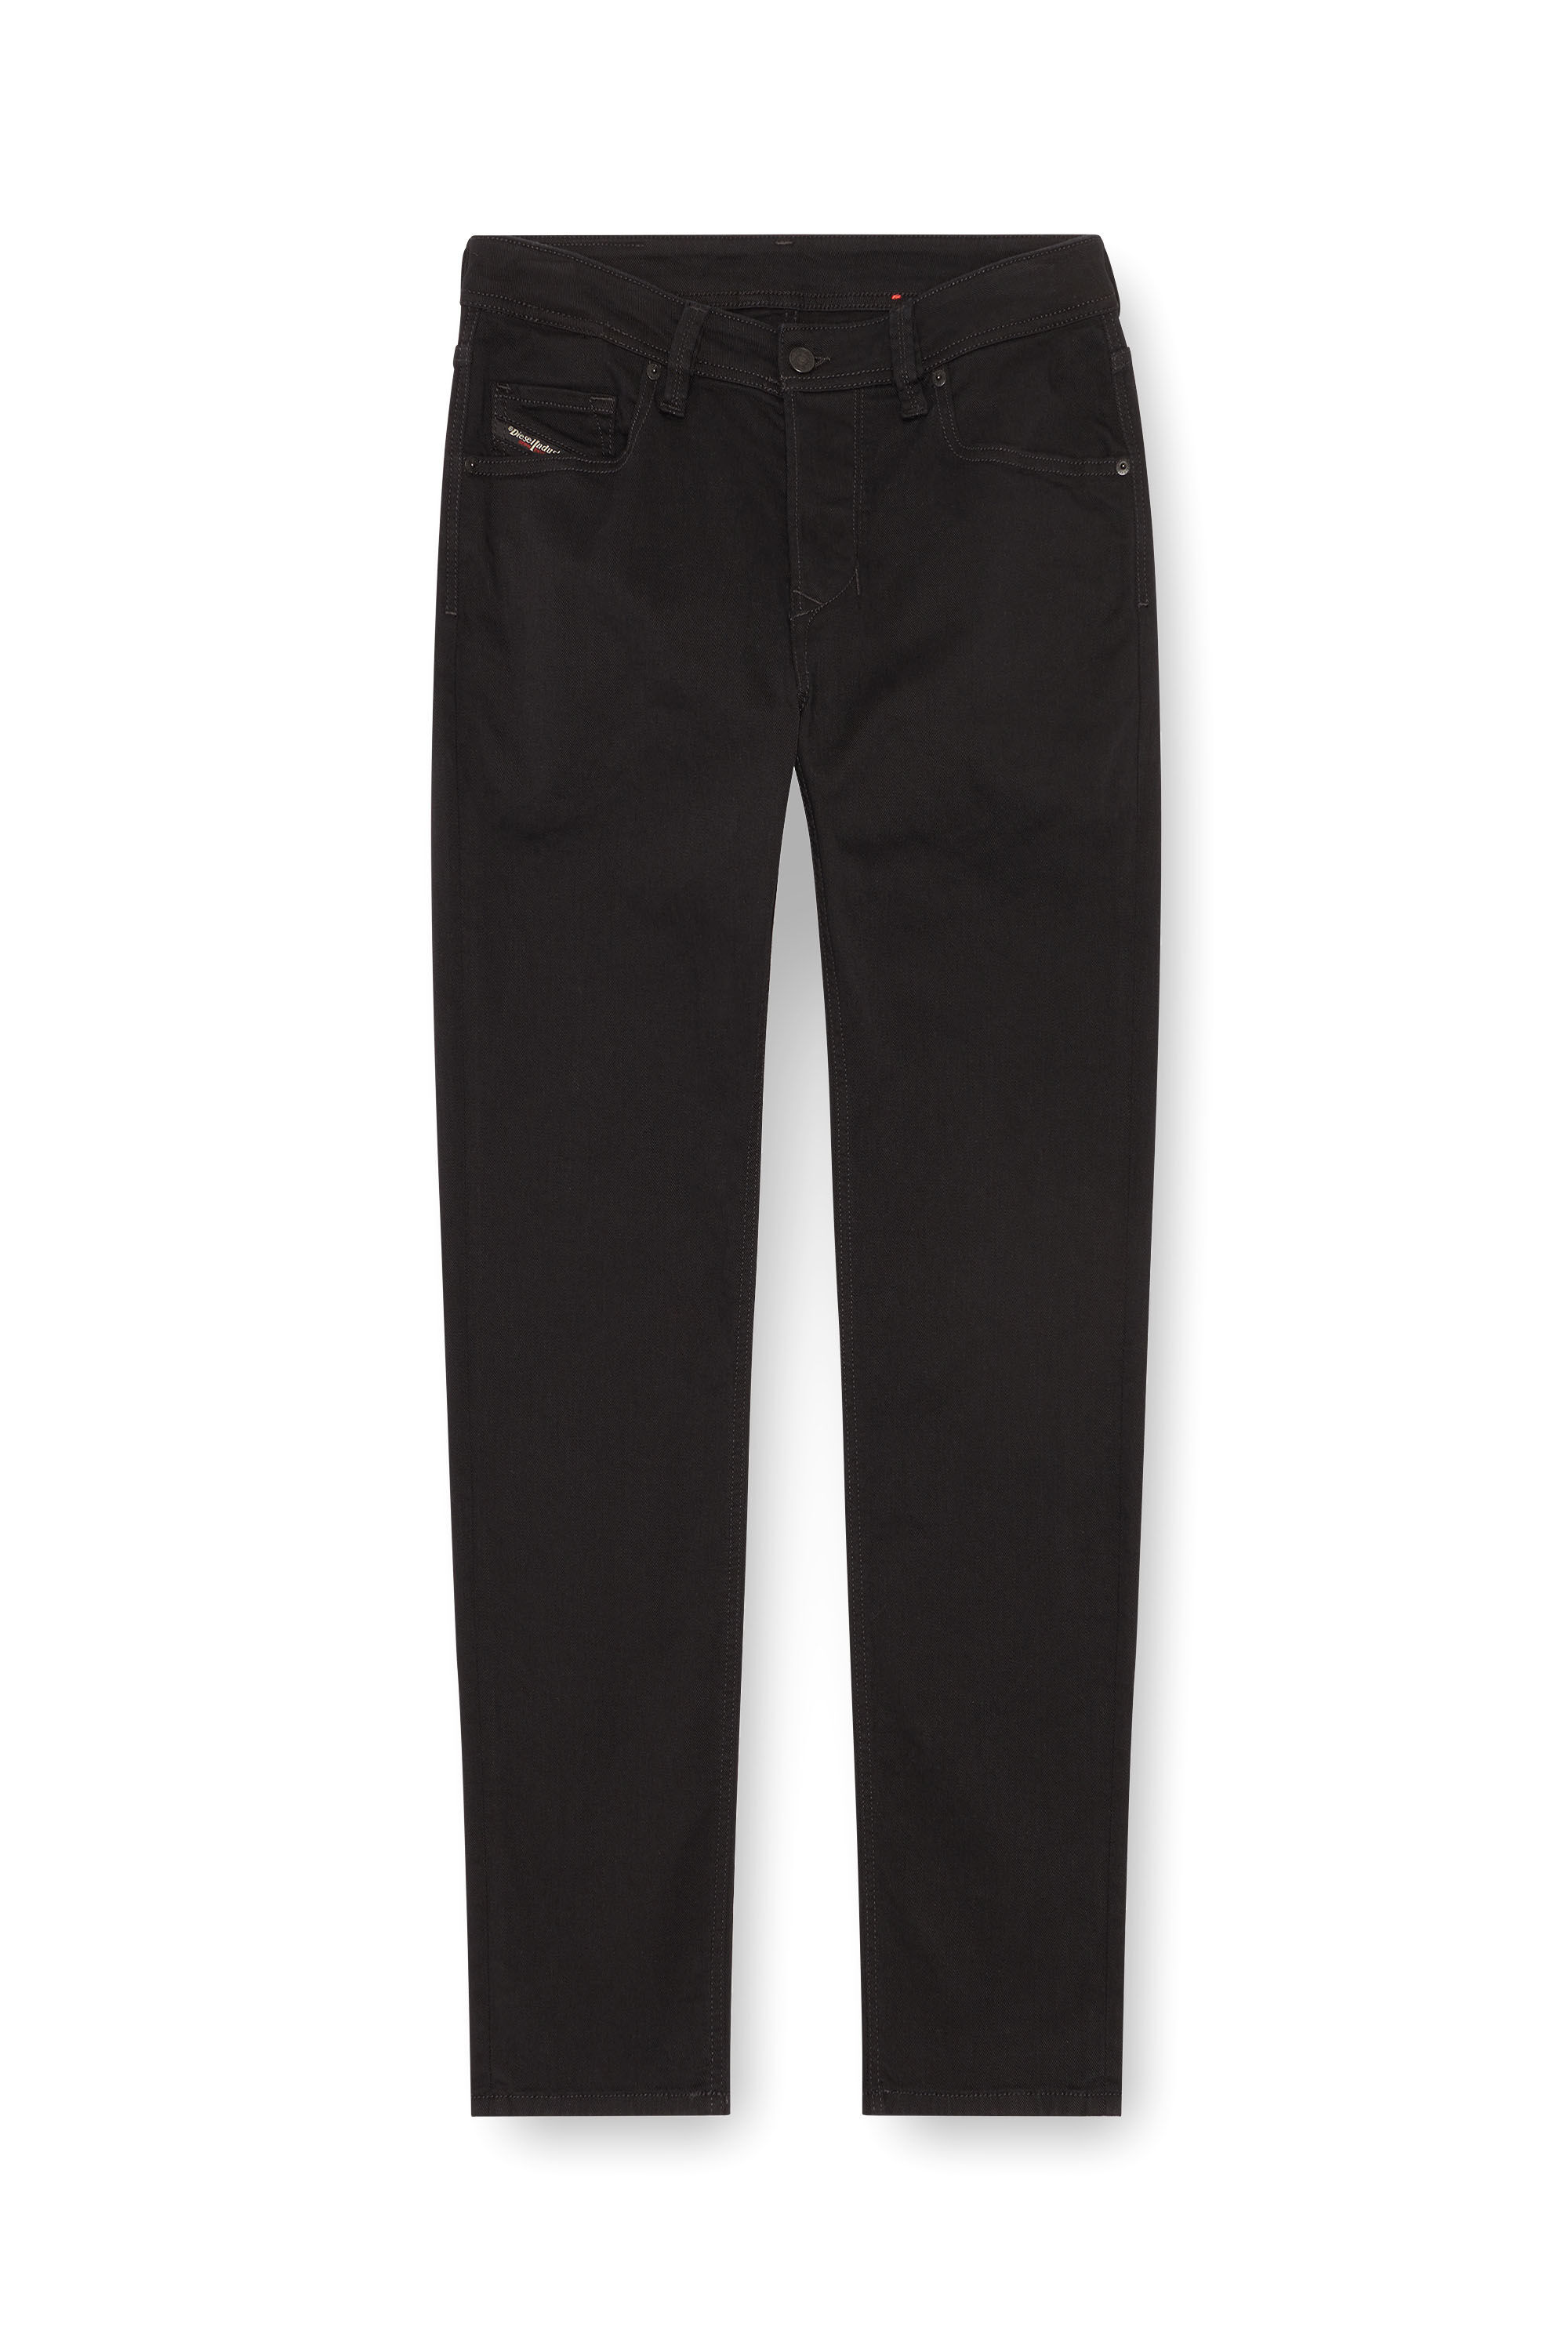 Diesel - Male Tapered Jeans 1986 Larkee-Beex 0688H, Black/Dark Grey - Image 2